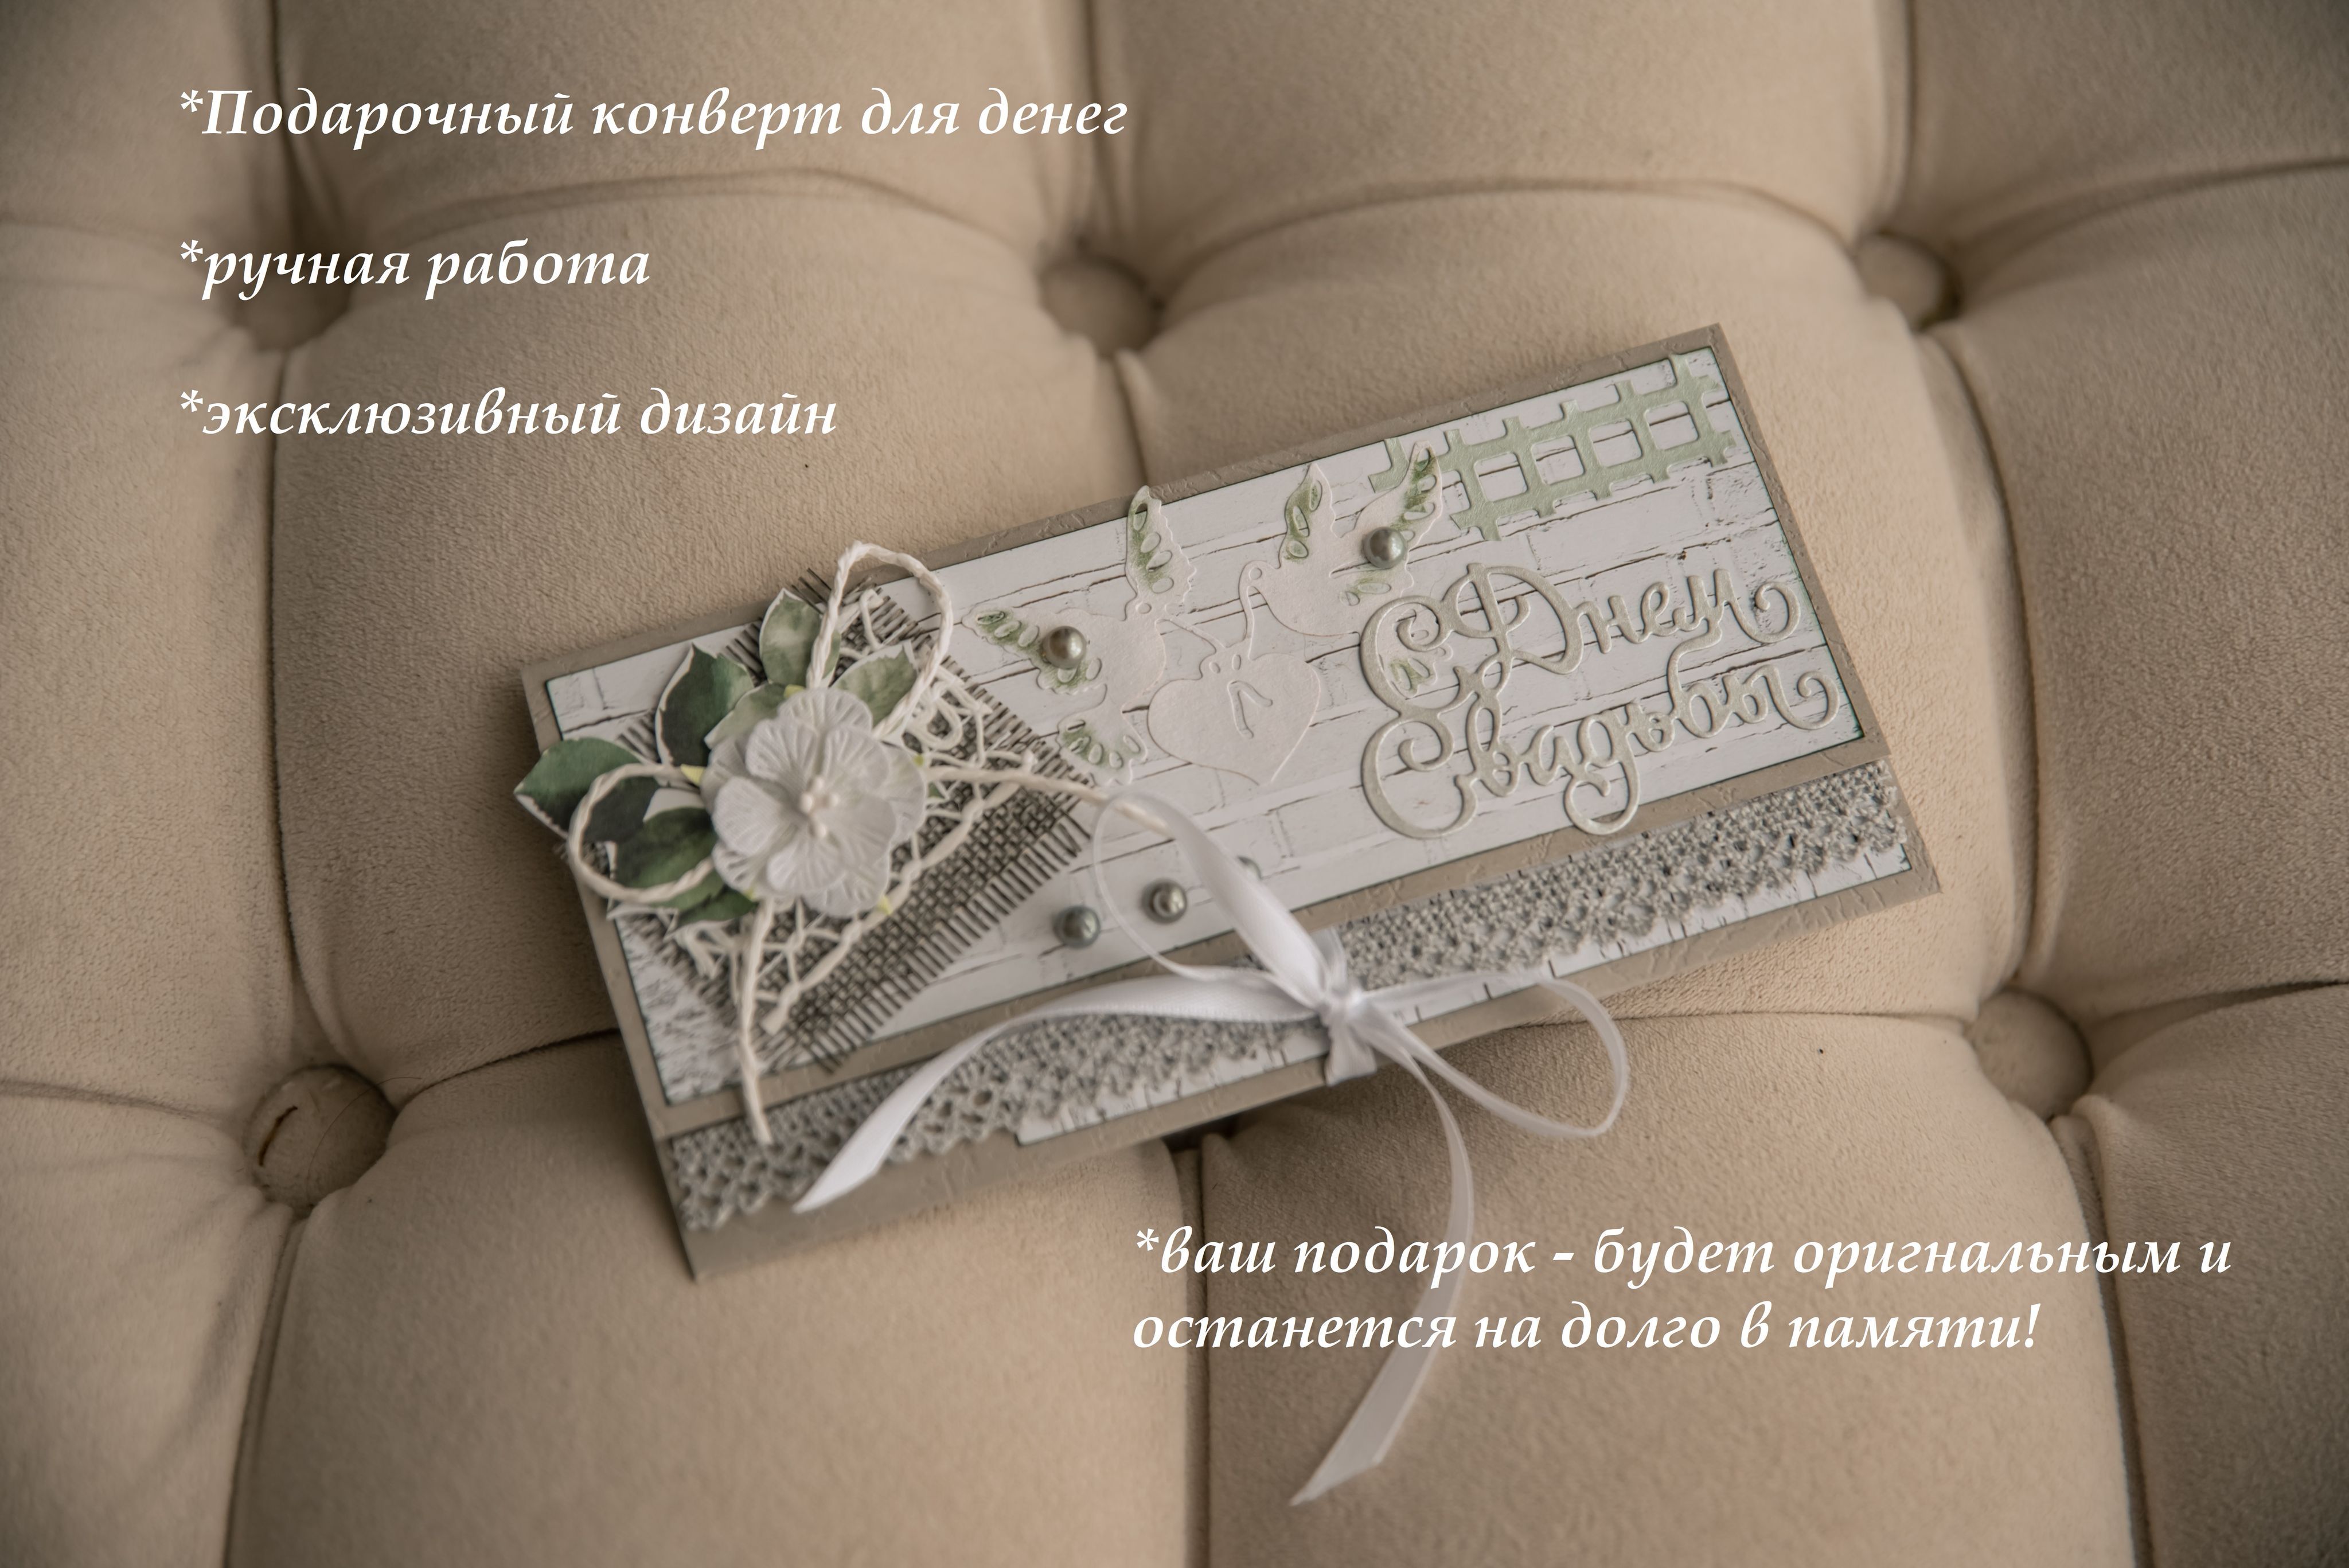 Свадебная открытка: лучшие варианты пожеланий